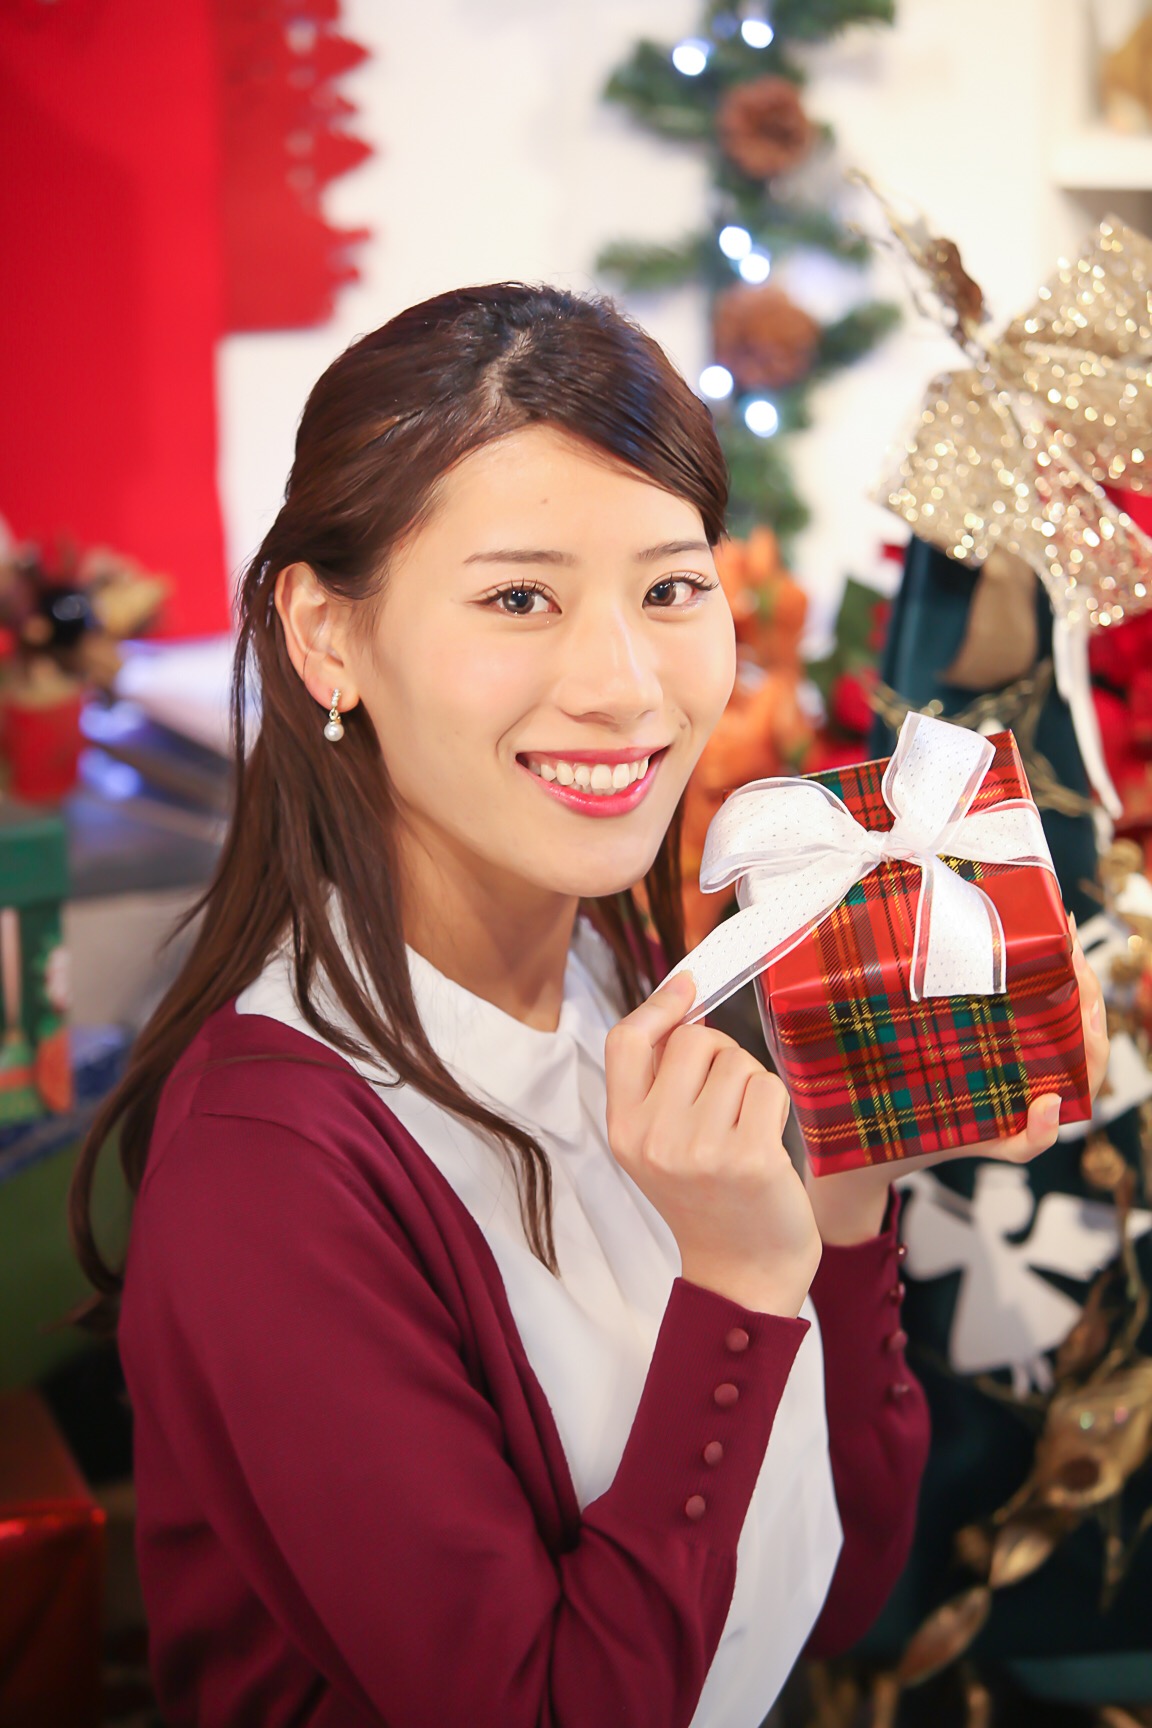 冬スイーツと千葉のホットなイベントでクリスマスをもっと笑顔に 千葉市観光協会公式サイト 千葉市観光ガイド